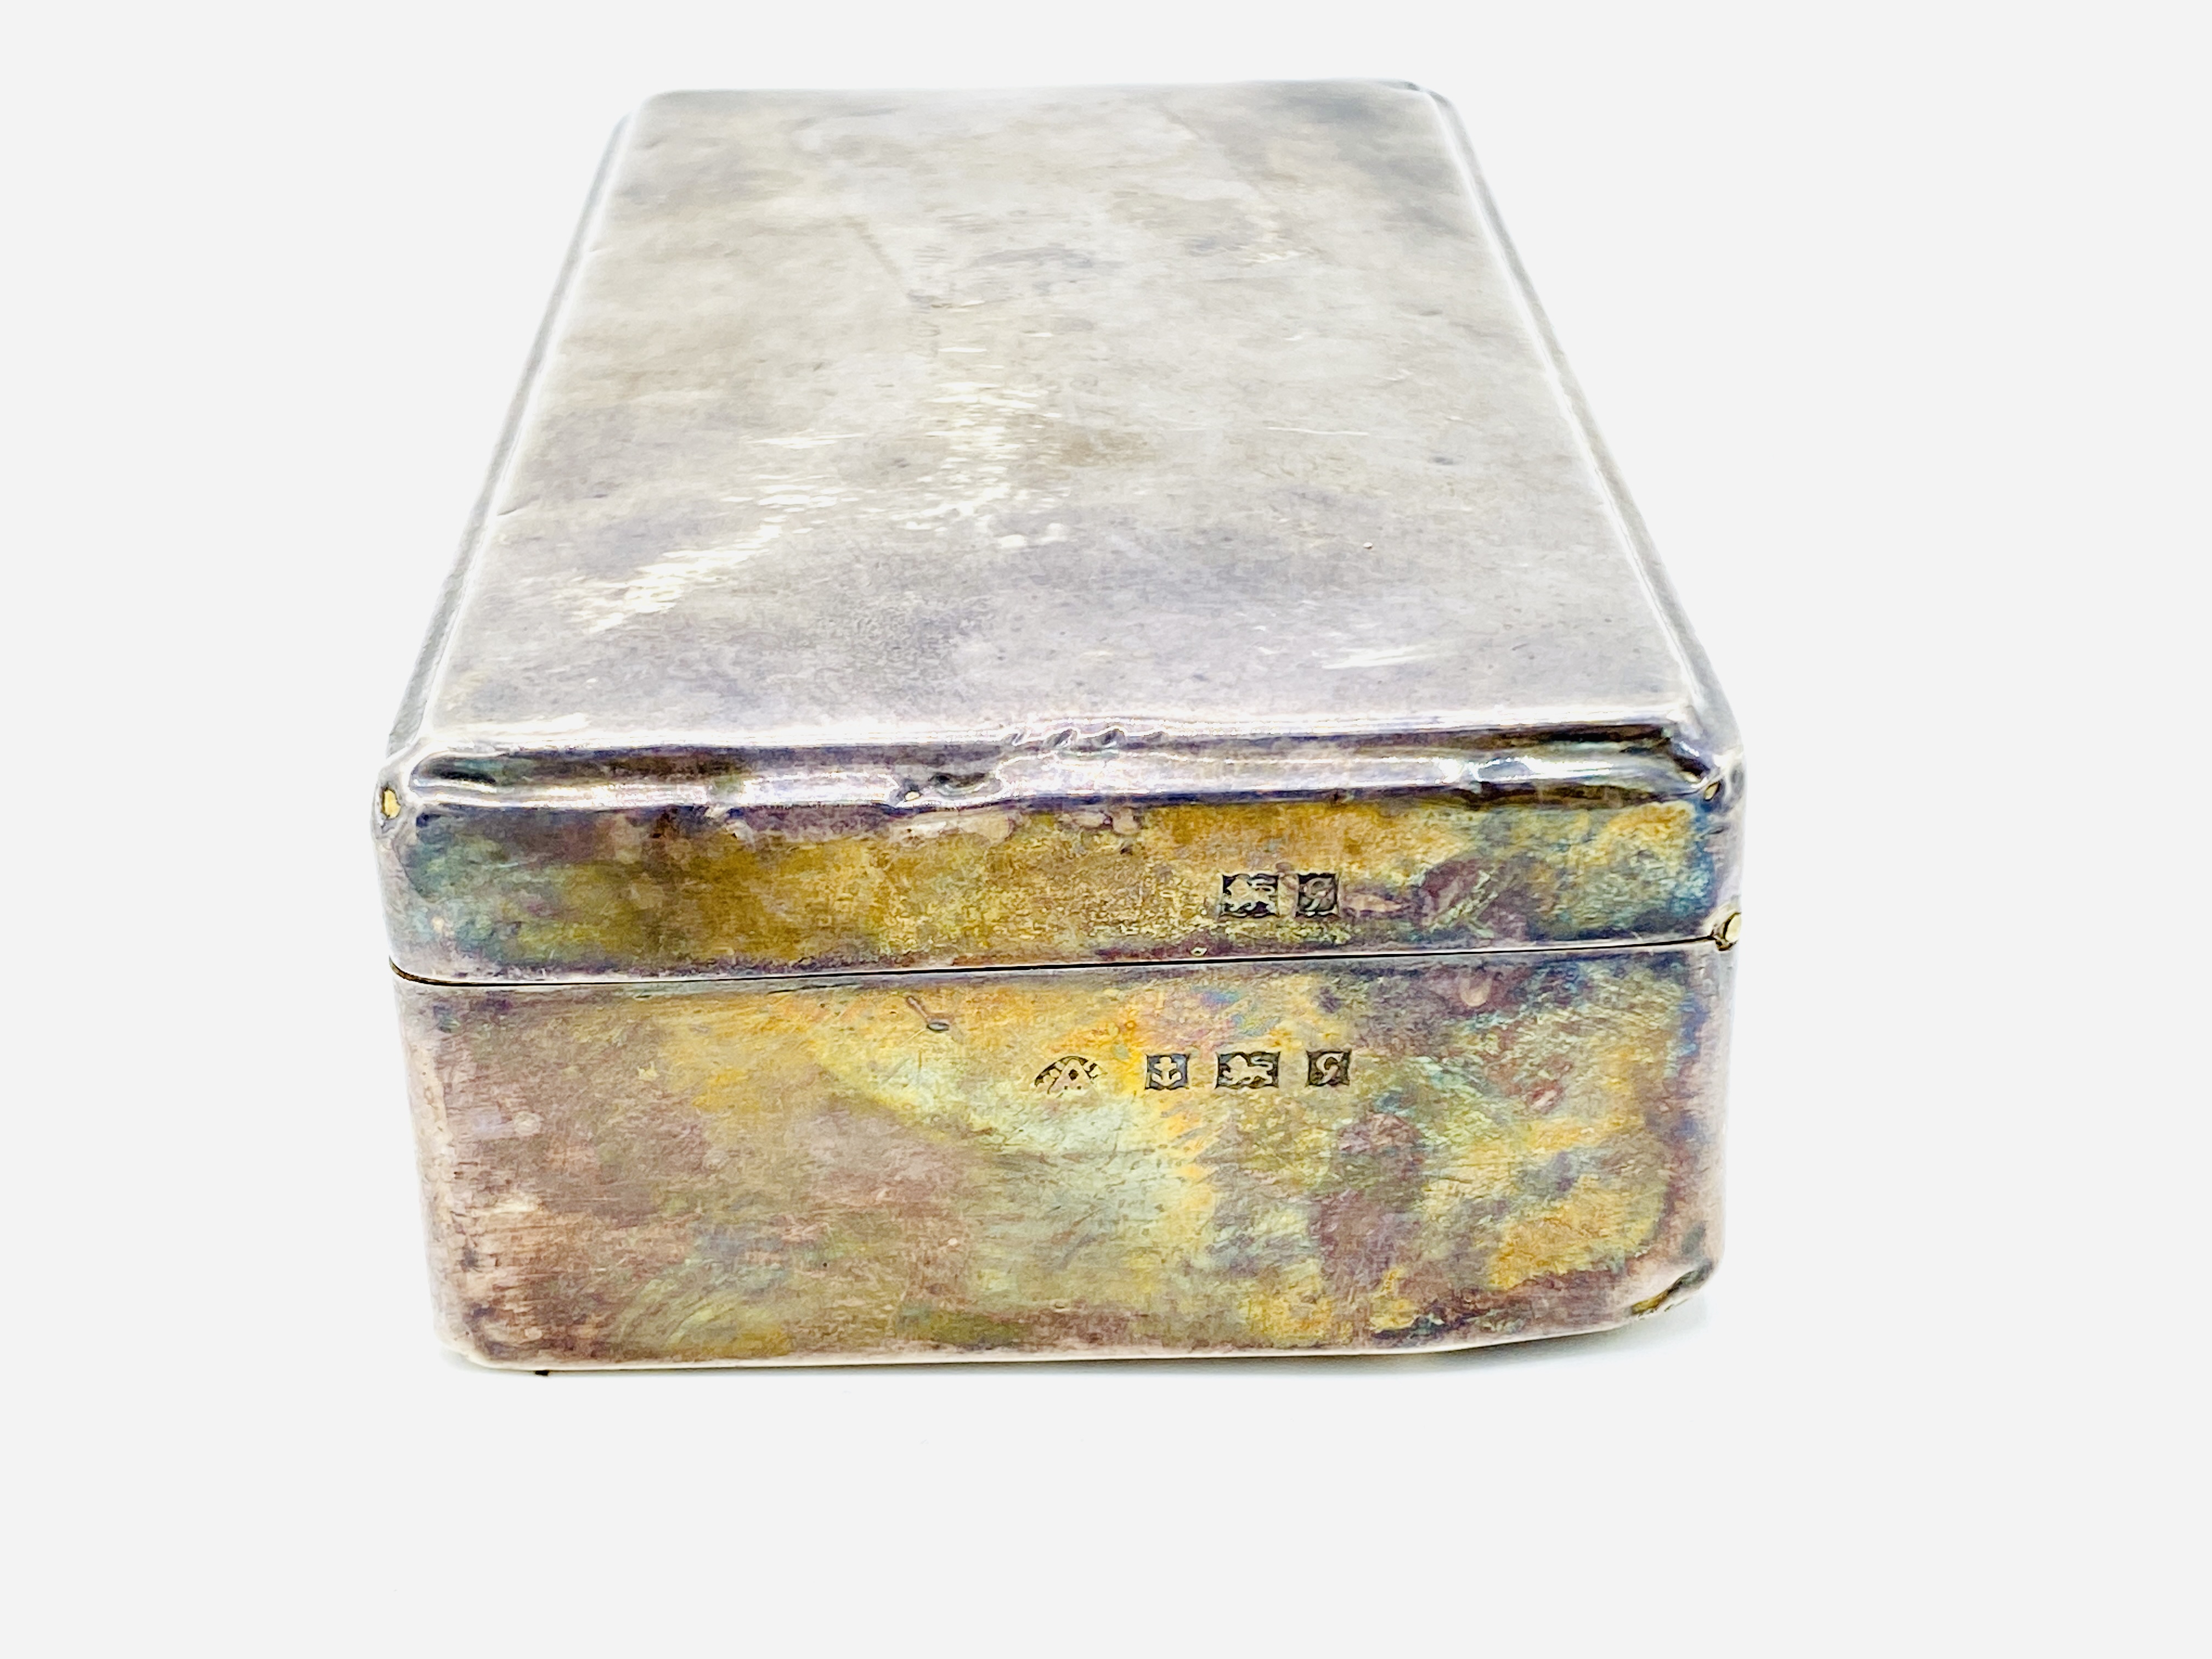 Silver cigarette box - Image 2 of 5